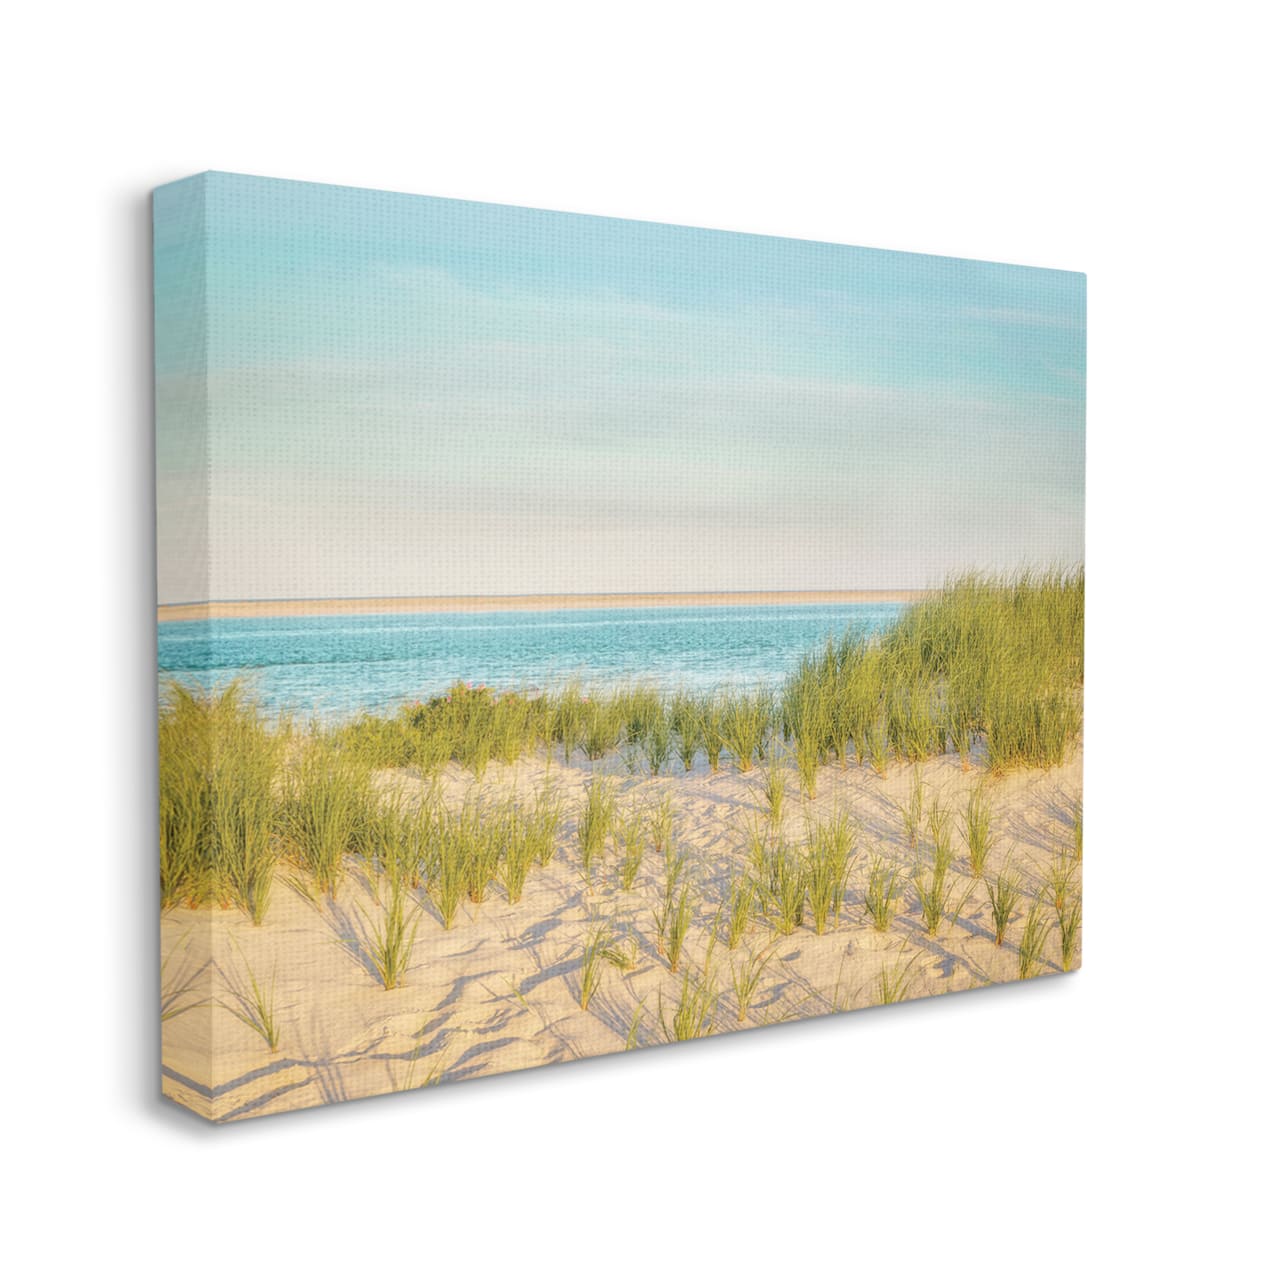 Stupell Industries Tall Grass Sand Dunes Nautical Beach Landscape Canvas Wall Art